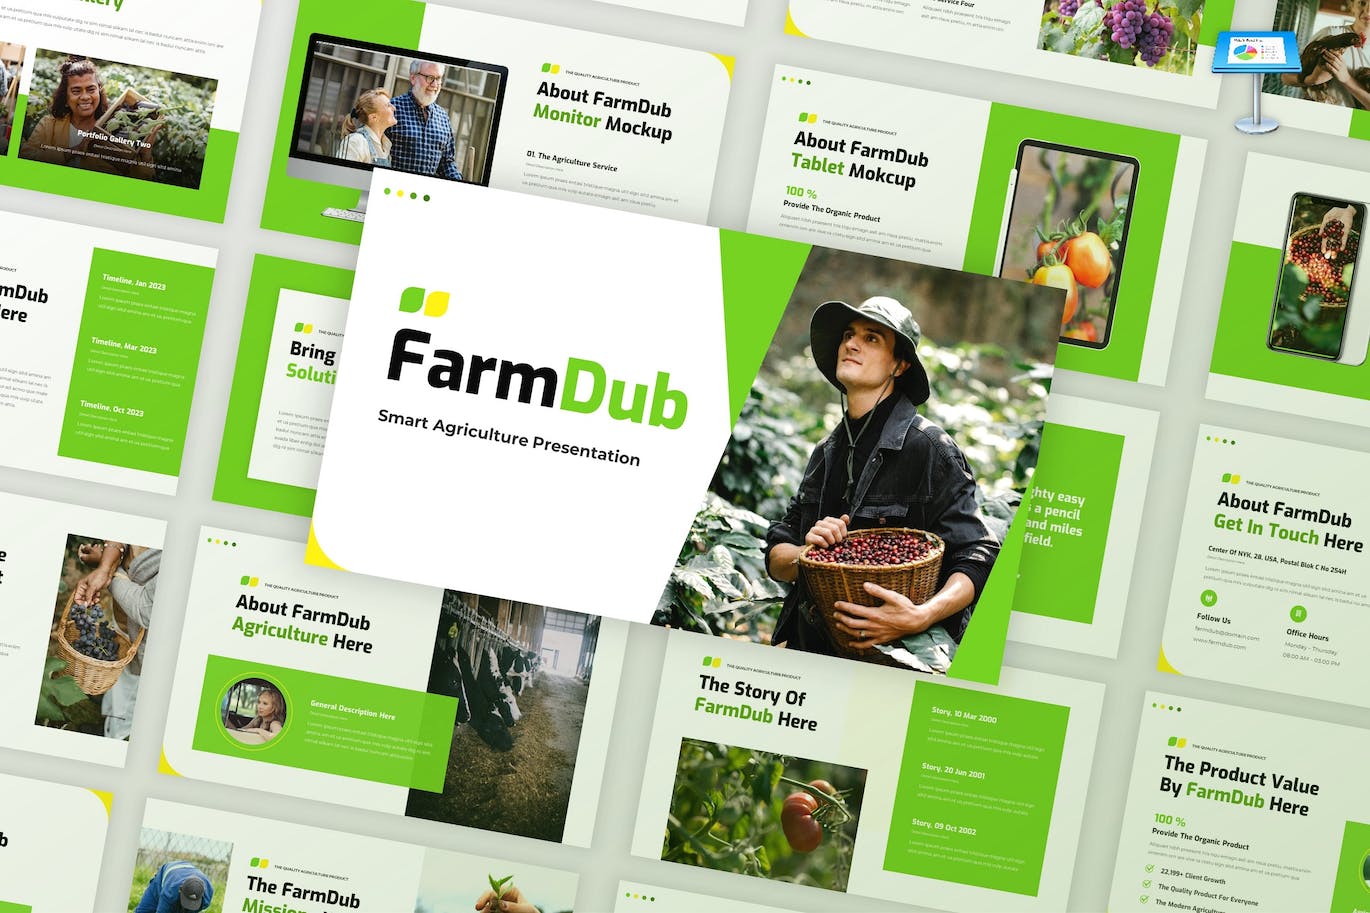 农业概况简介Keynote幻灯片素材 FarmDub – Agriculture Profile Keynote Template 幻灯图表 第1张